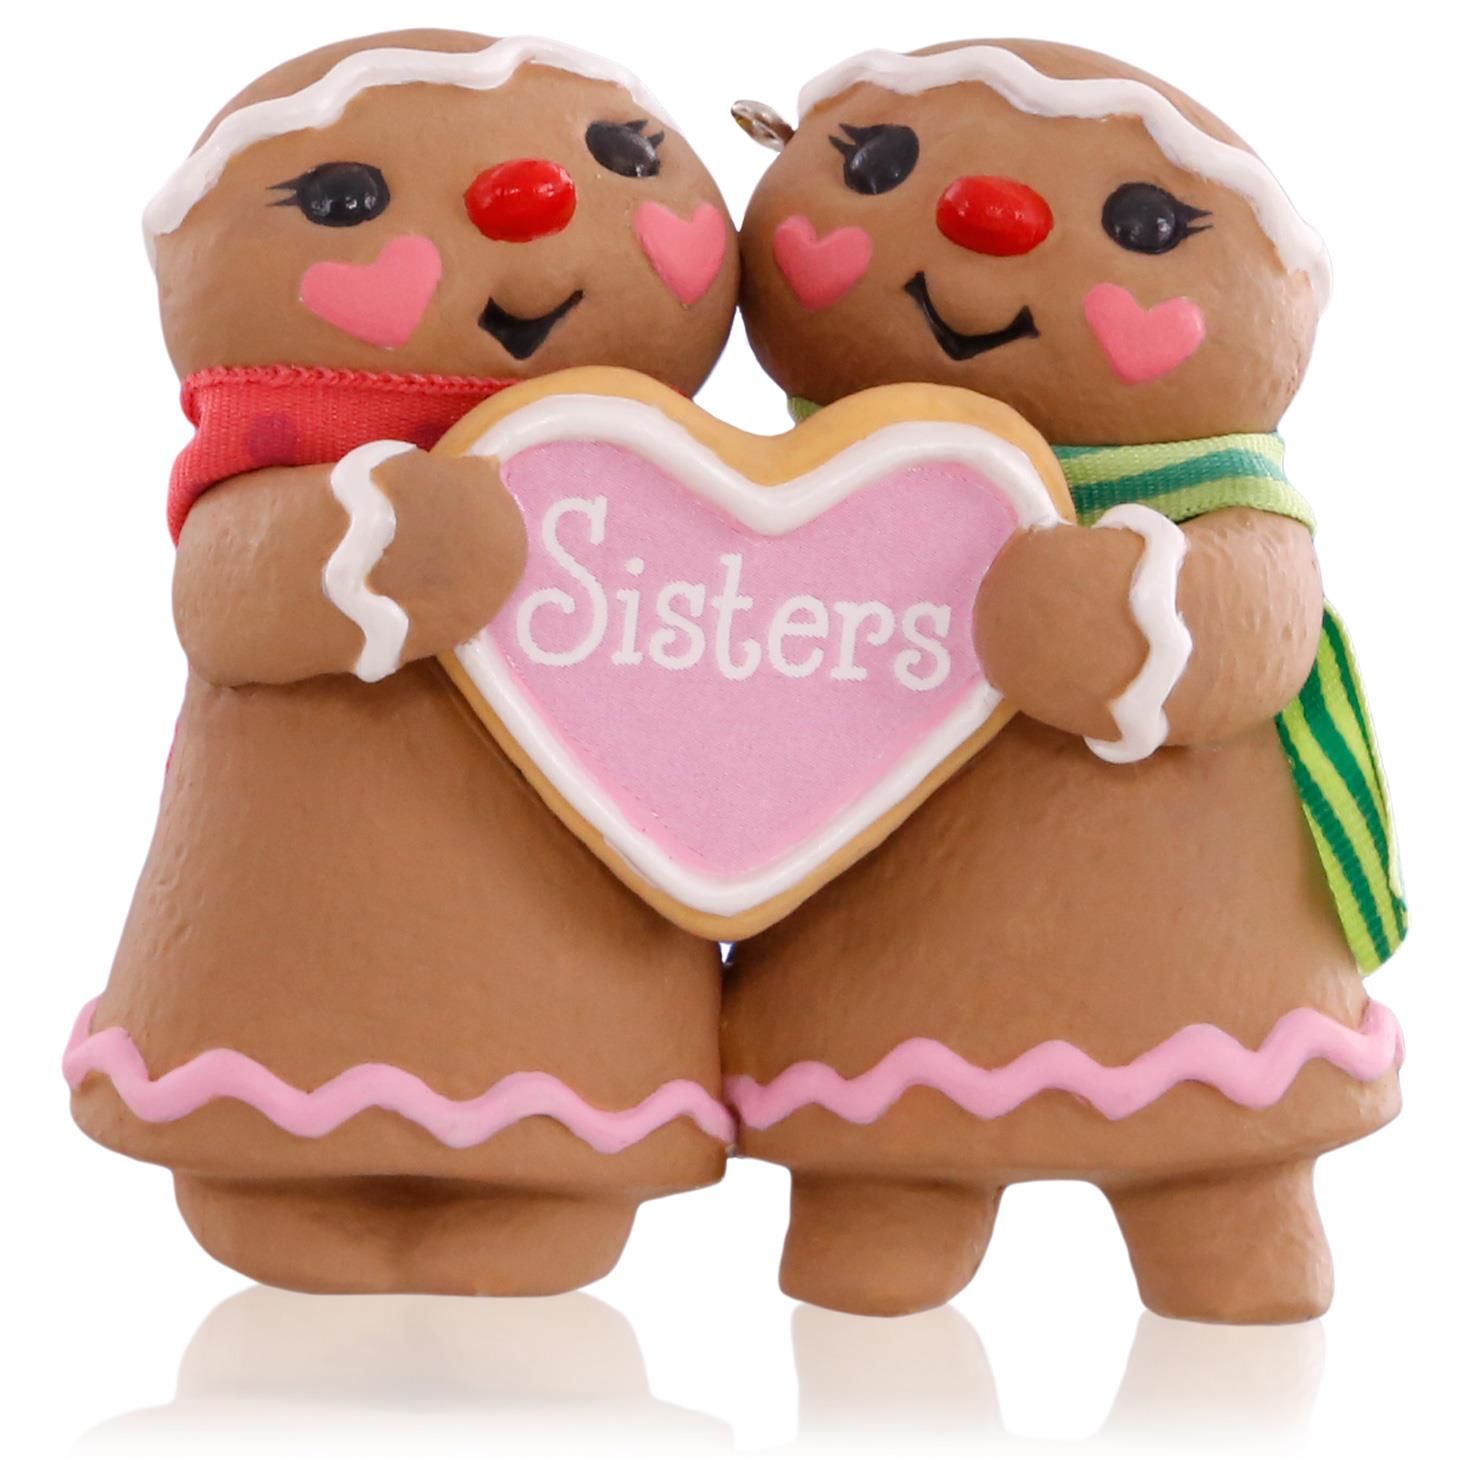 2015 Sweet Sisters Hallmark Keepsake Ornament - Hooked on Hallmark ...